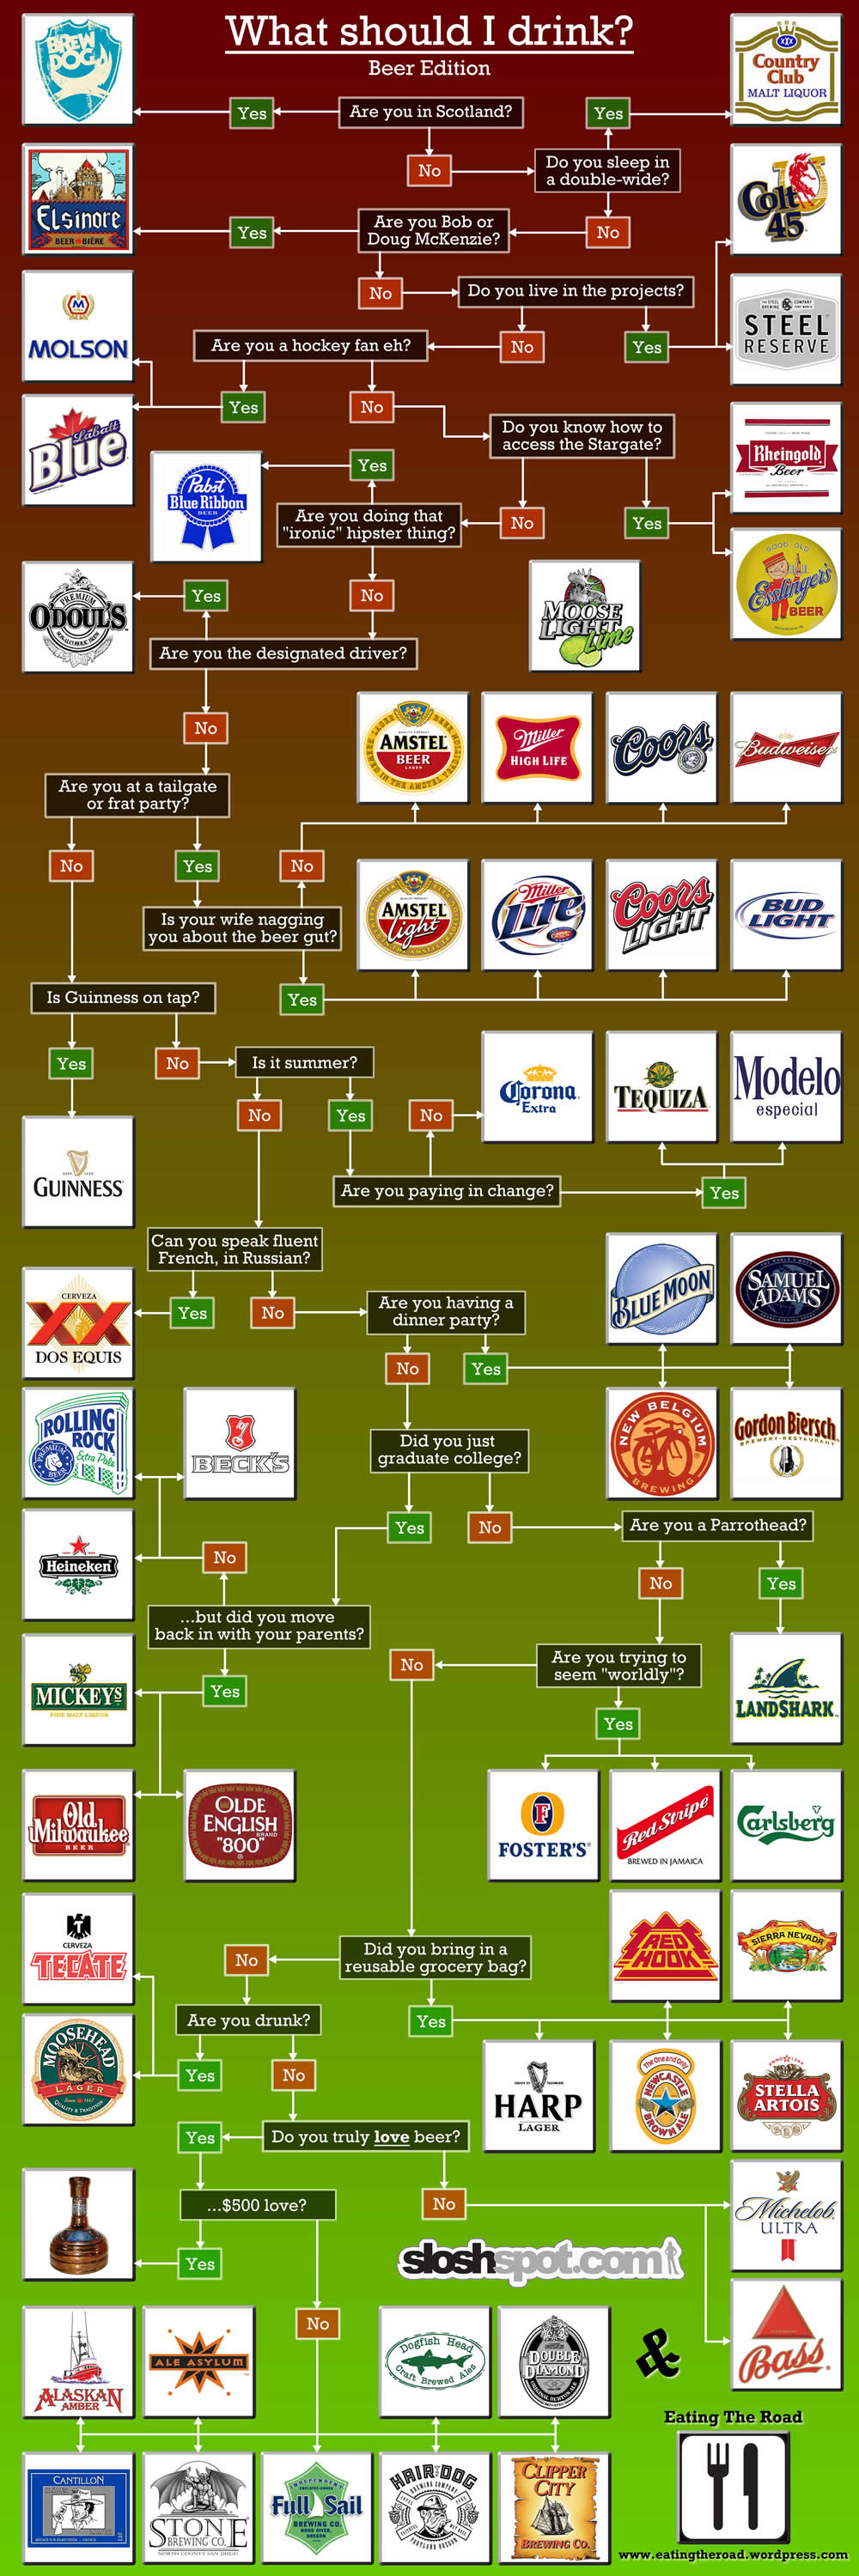 what-should-i-drink-beer4.jpg